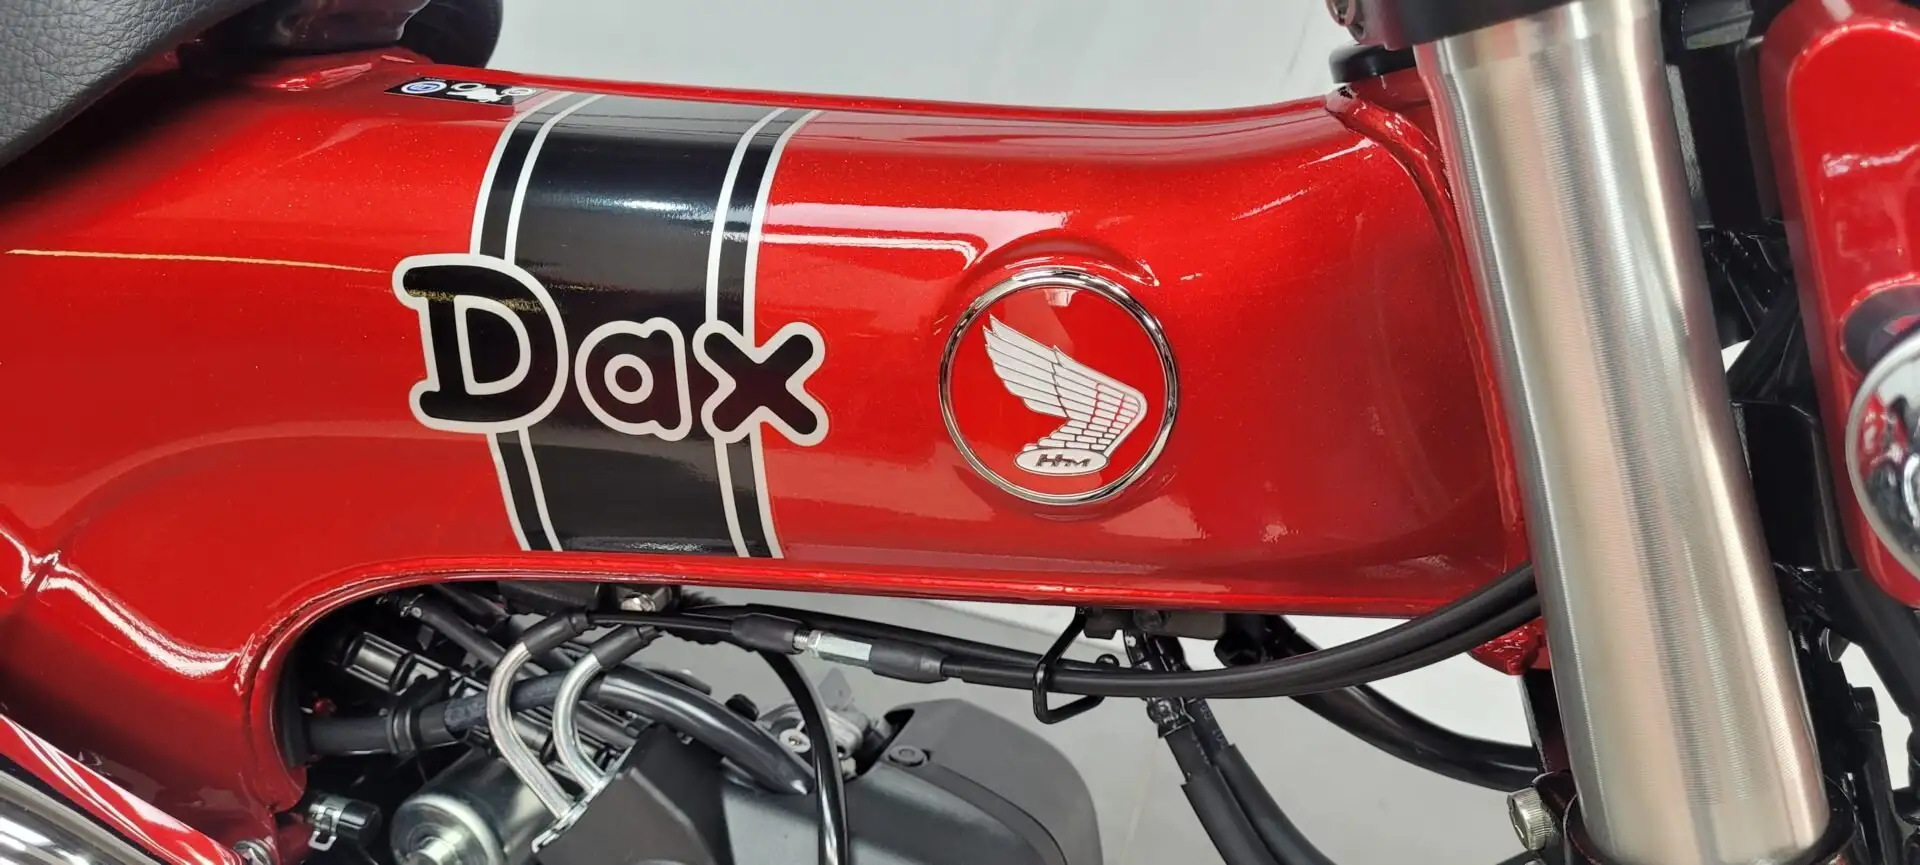 Honda DAX ST 125 9 km ... ***MOTODOC.BE*** Rot - 2